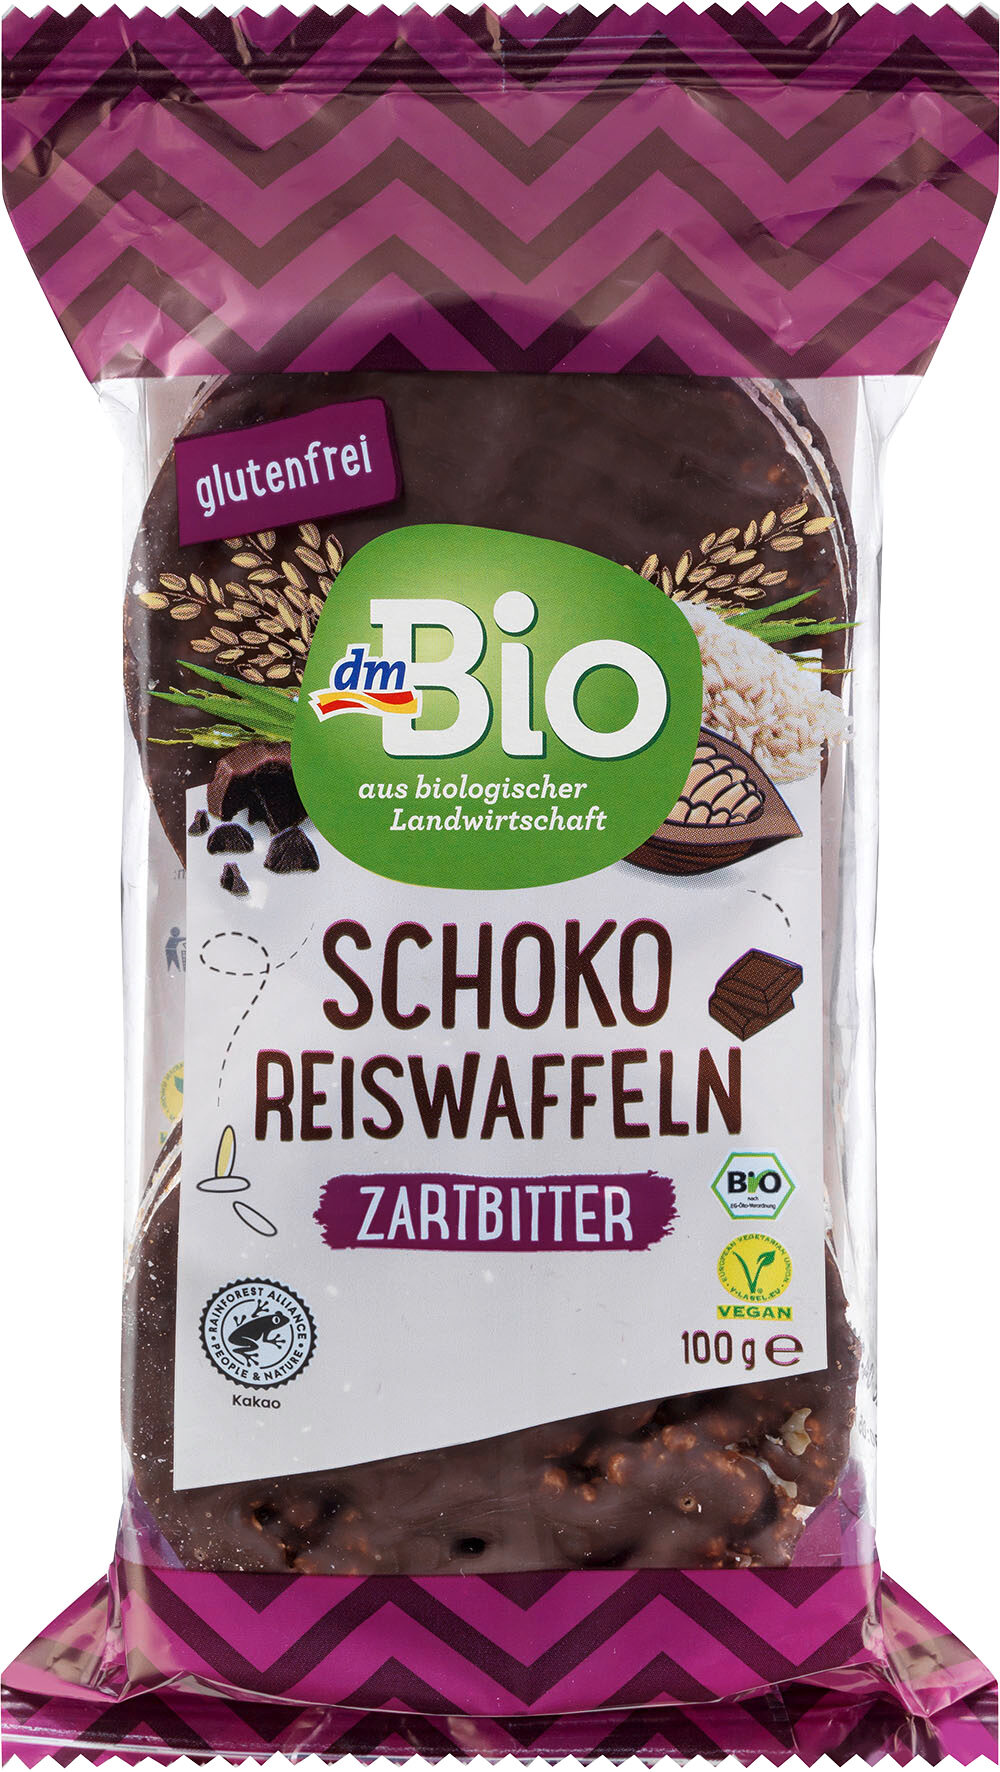 Schoko Reiswaffeln Zartbitter - Product - de